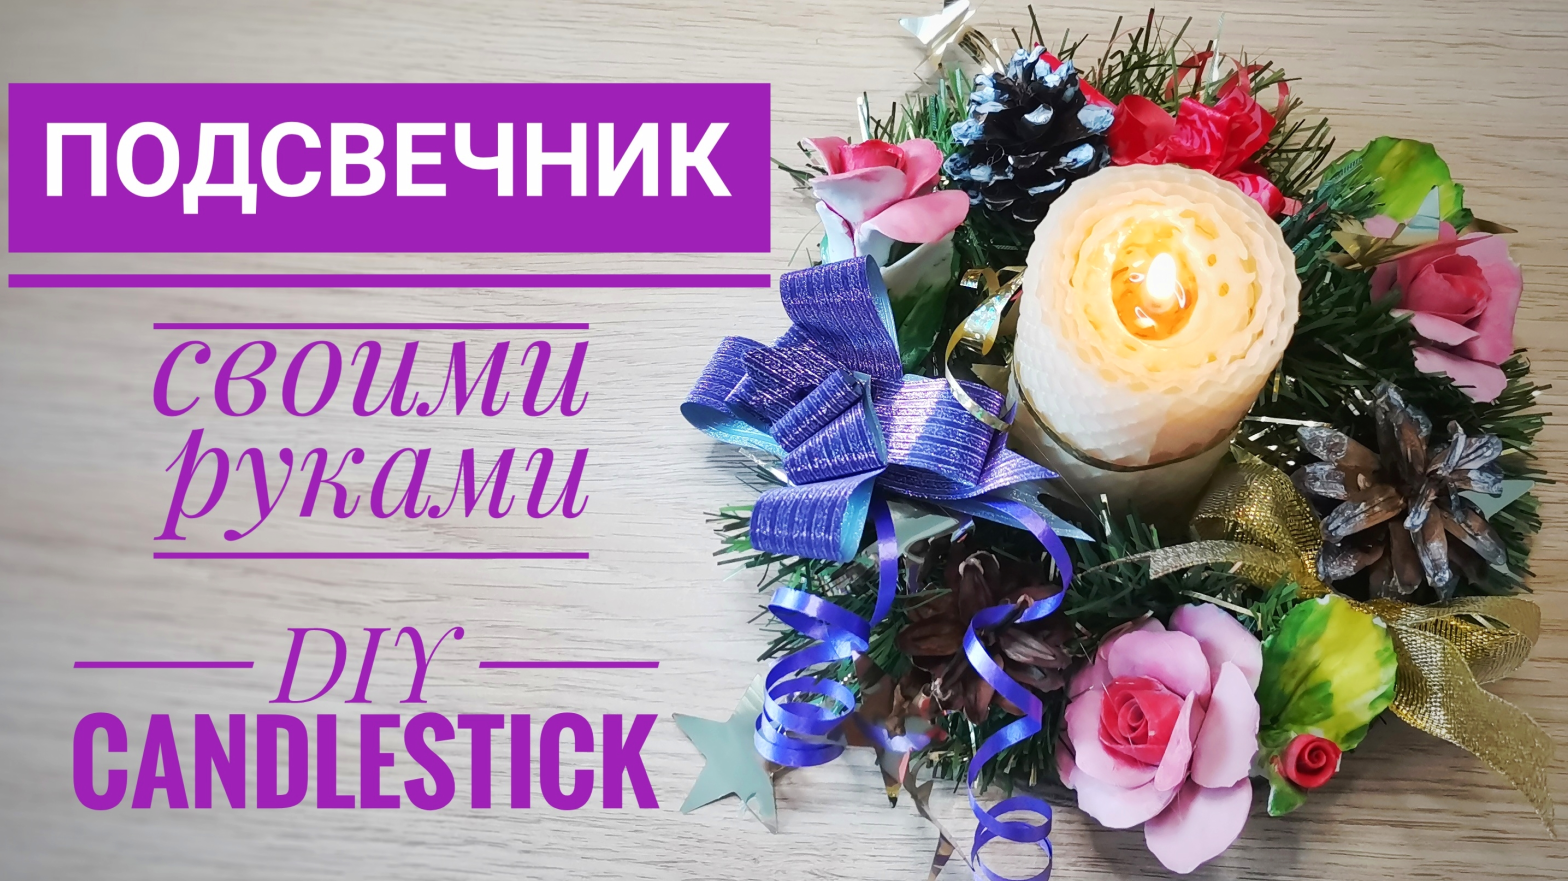 Красивый ПОДСВЕЧНИК Своими Руками / DIY Candlestick